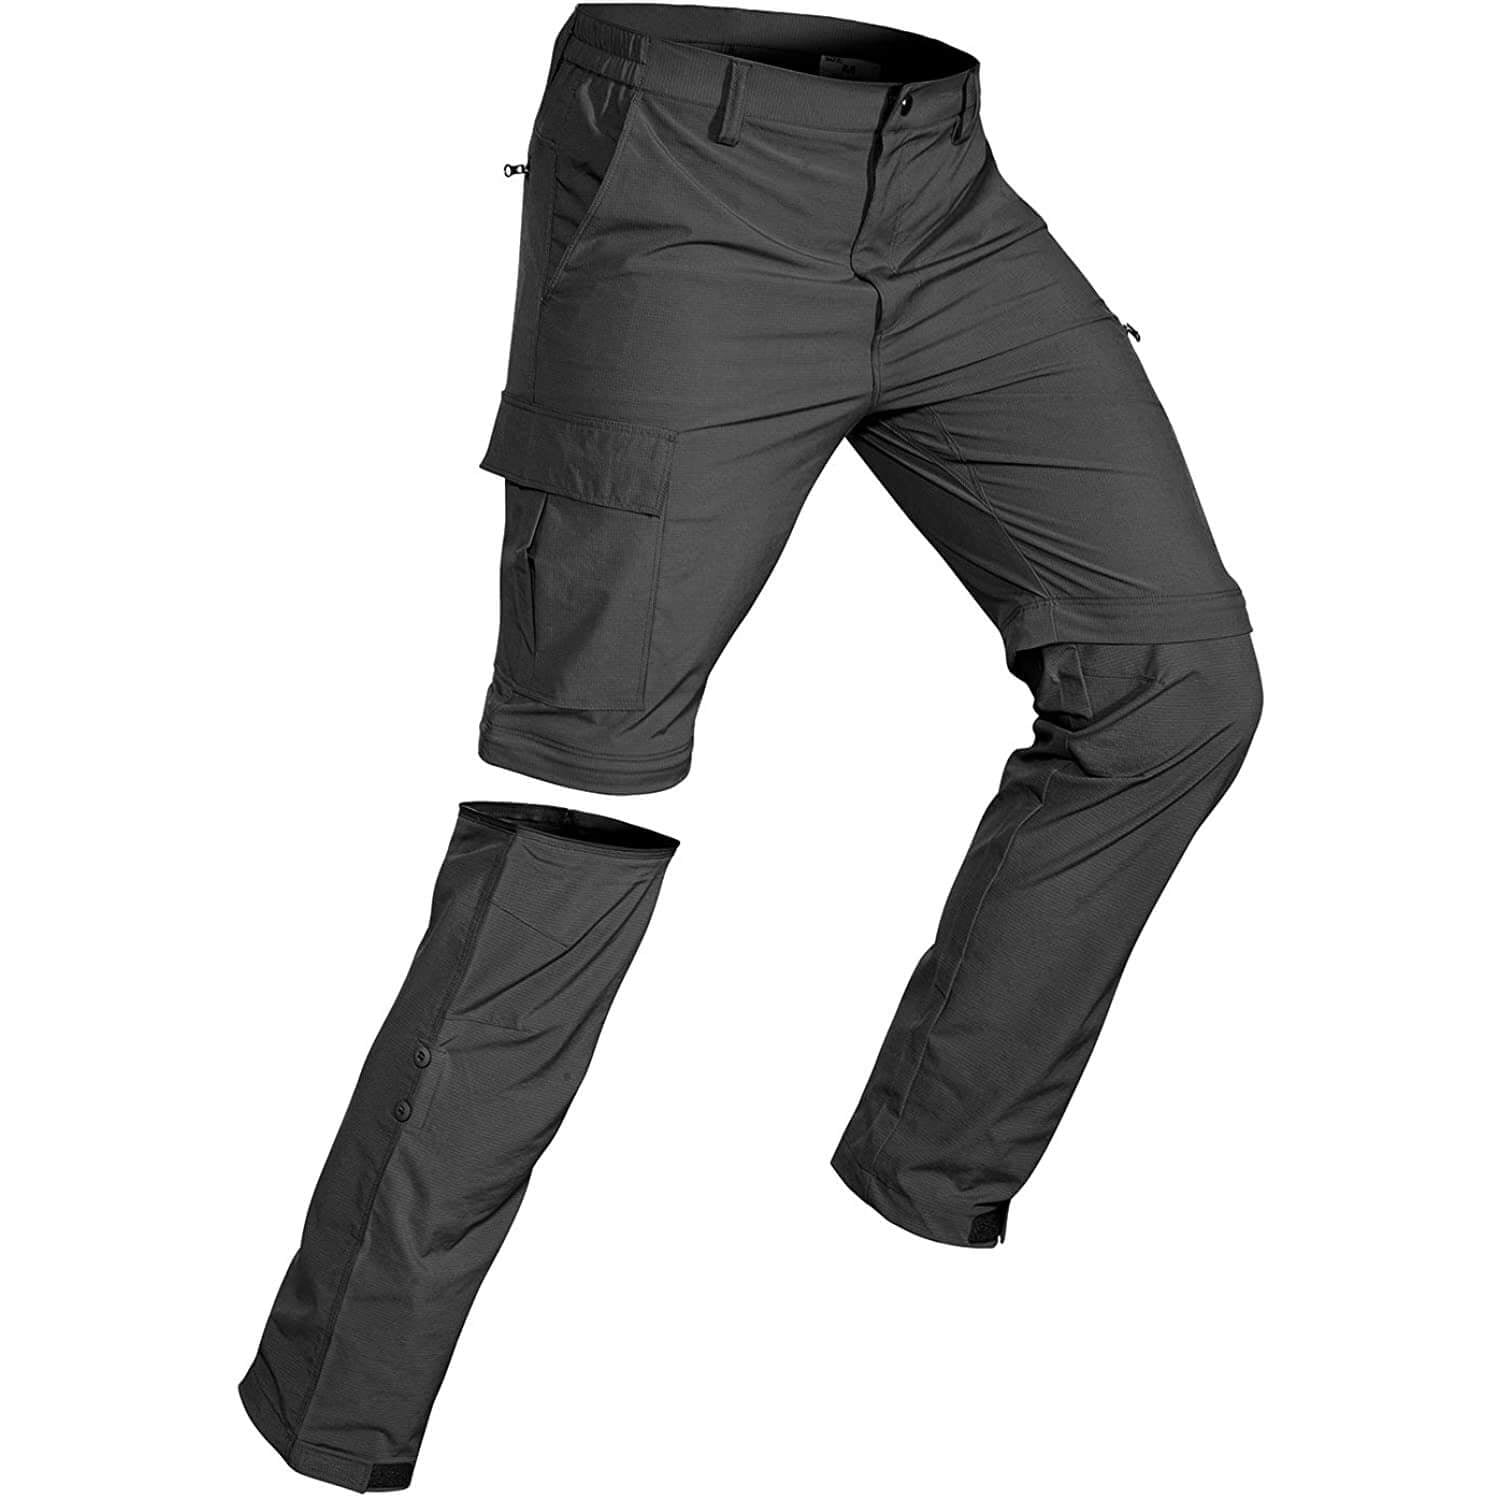 Hiauspor Men's Convertible Hiking Pants Outdoor Quick Dry Zip Off Pants ...